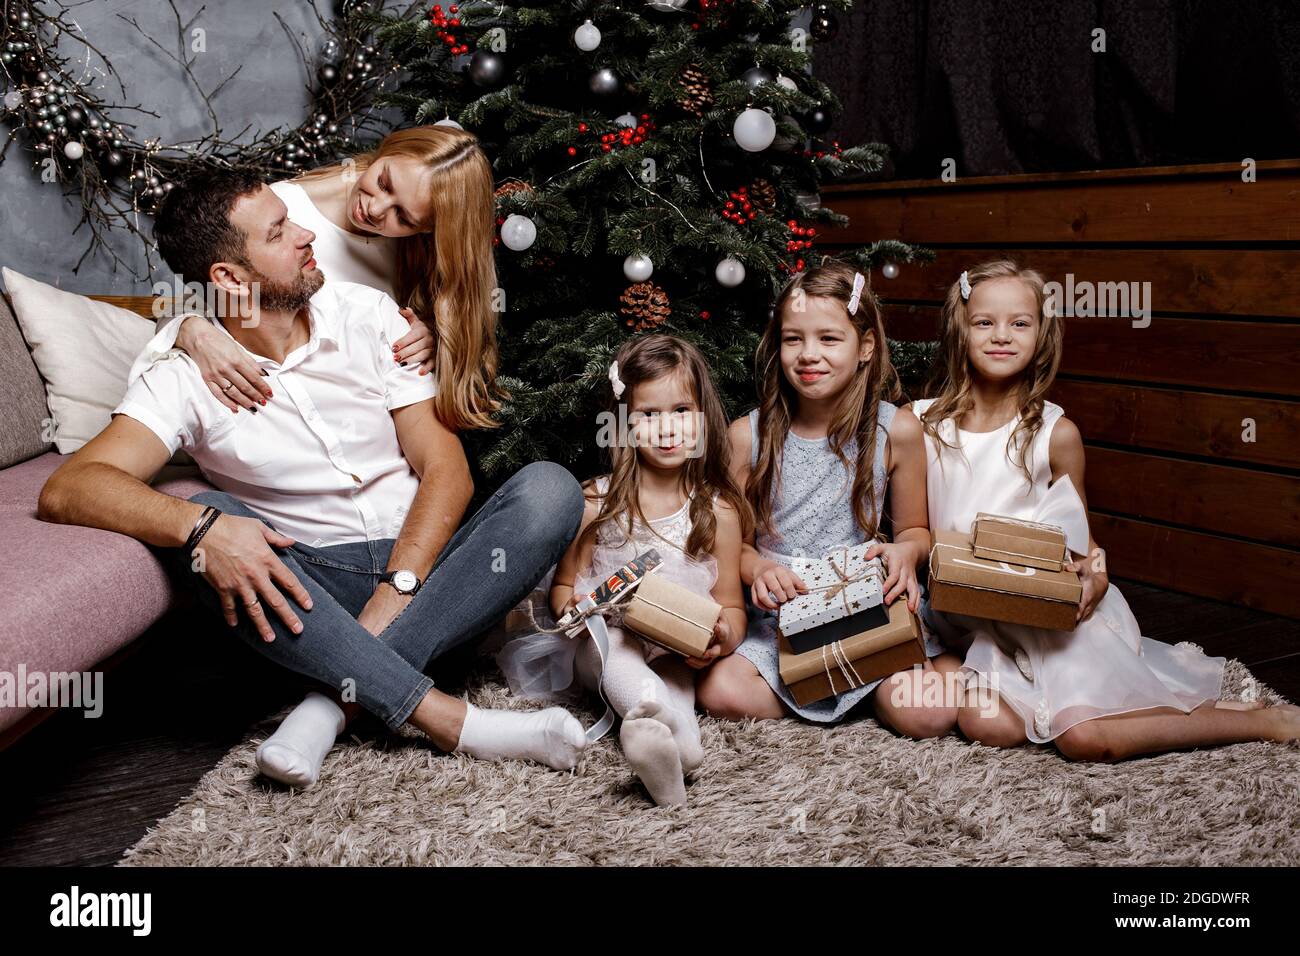 Glückliche nette Familie mit drei Kindern Austausch von Geschenken unter dem Weihnachtsbaum auf dem Teppich. Familien- und Urlaubskonzept. Stockfoto